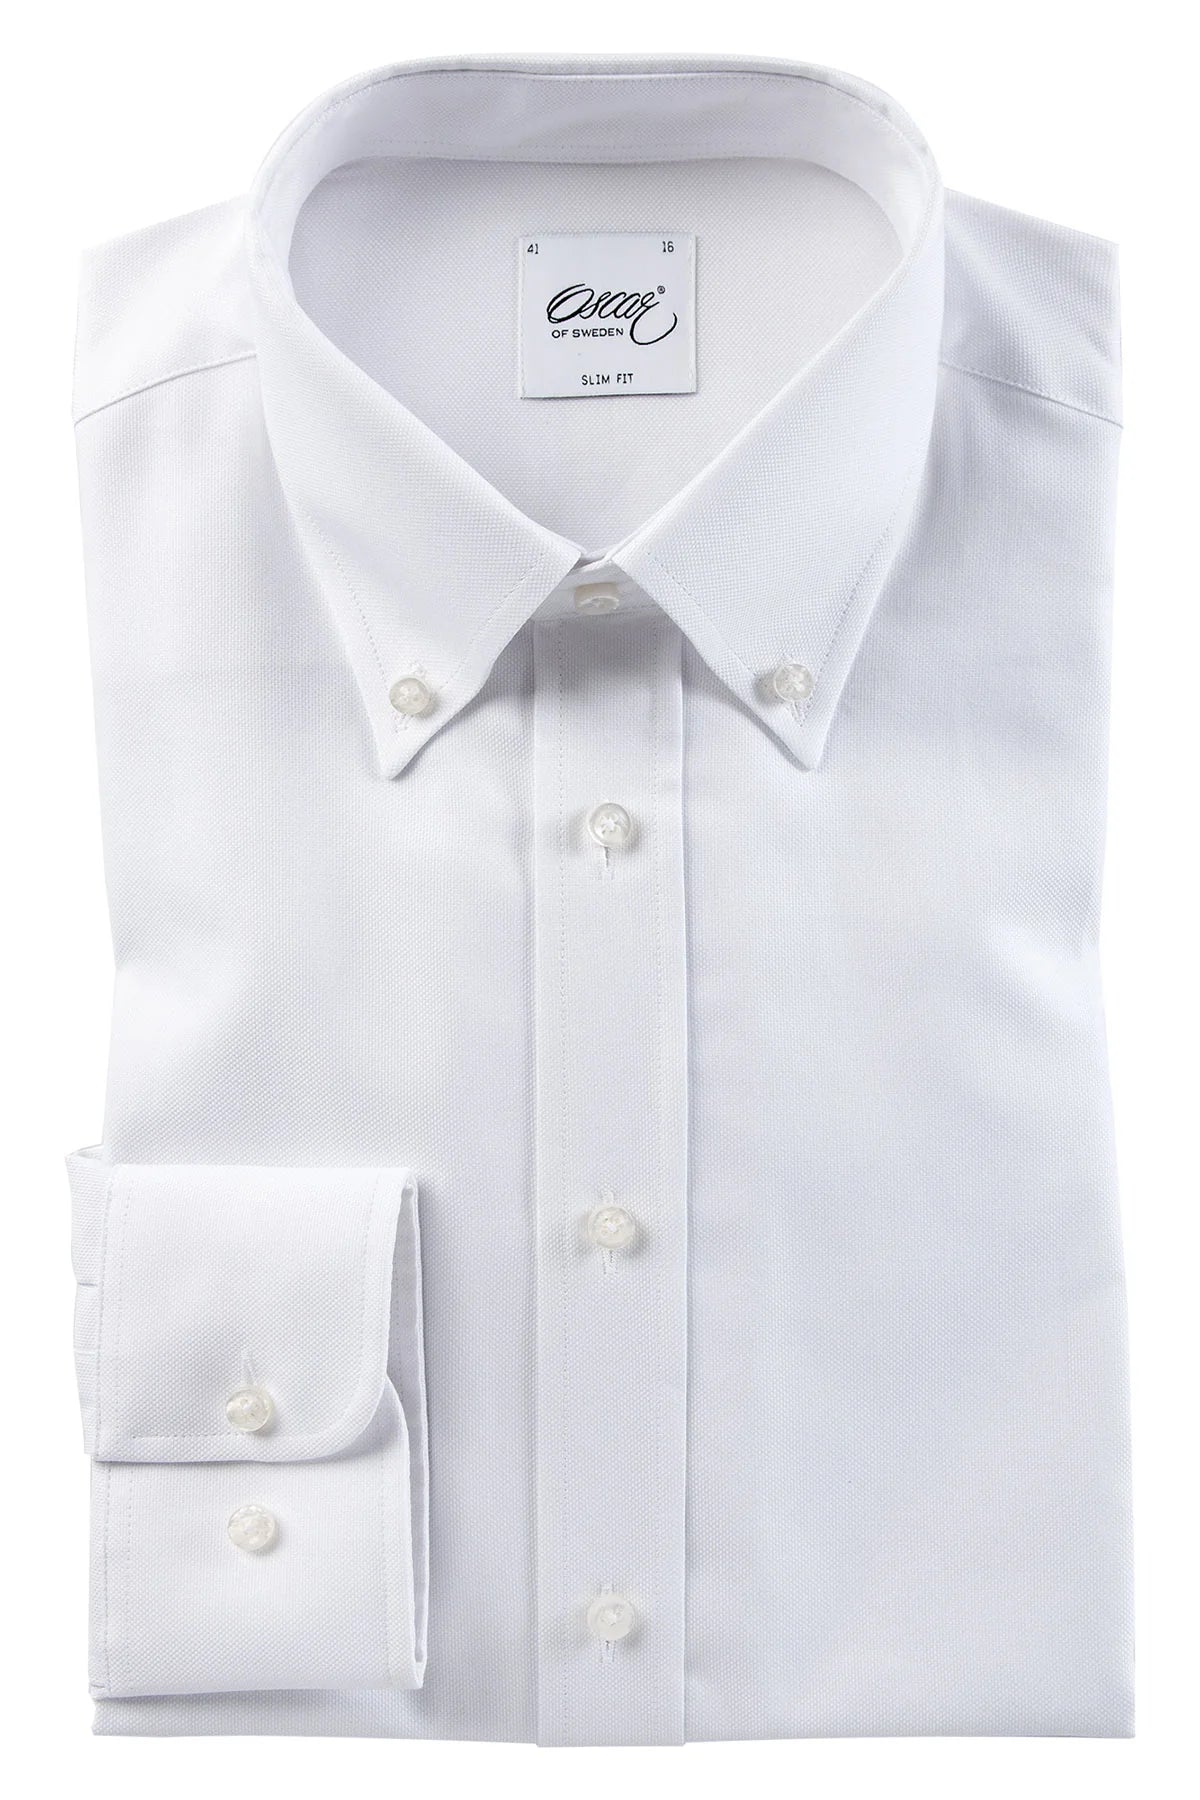 OSCAR OF SWEDEN Button Down Shirt | White